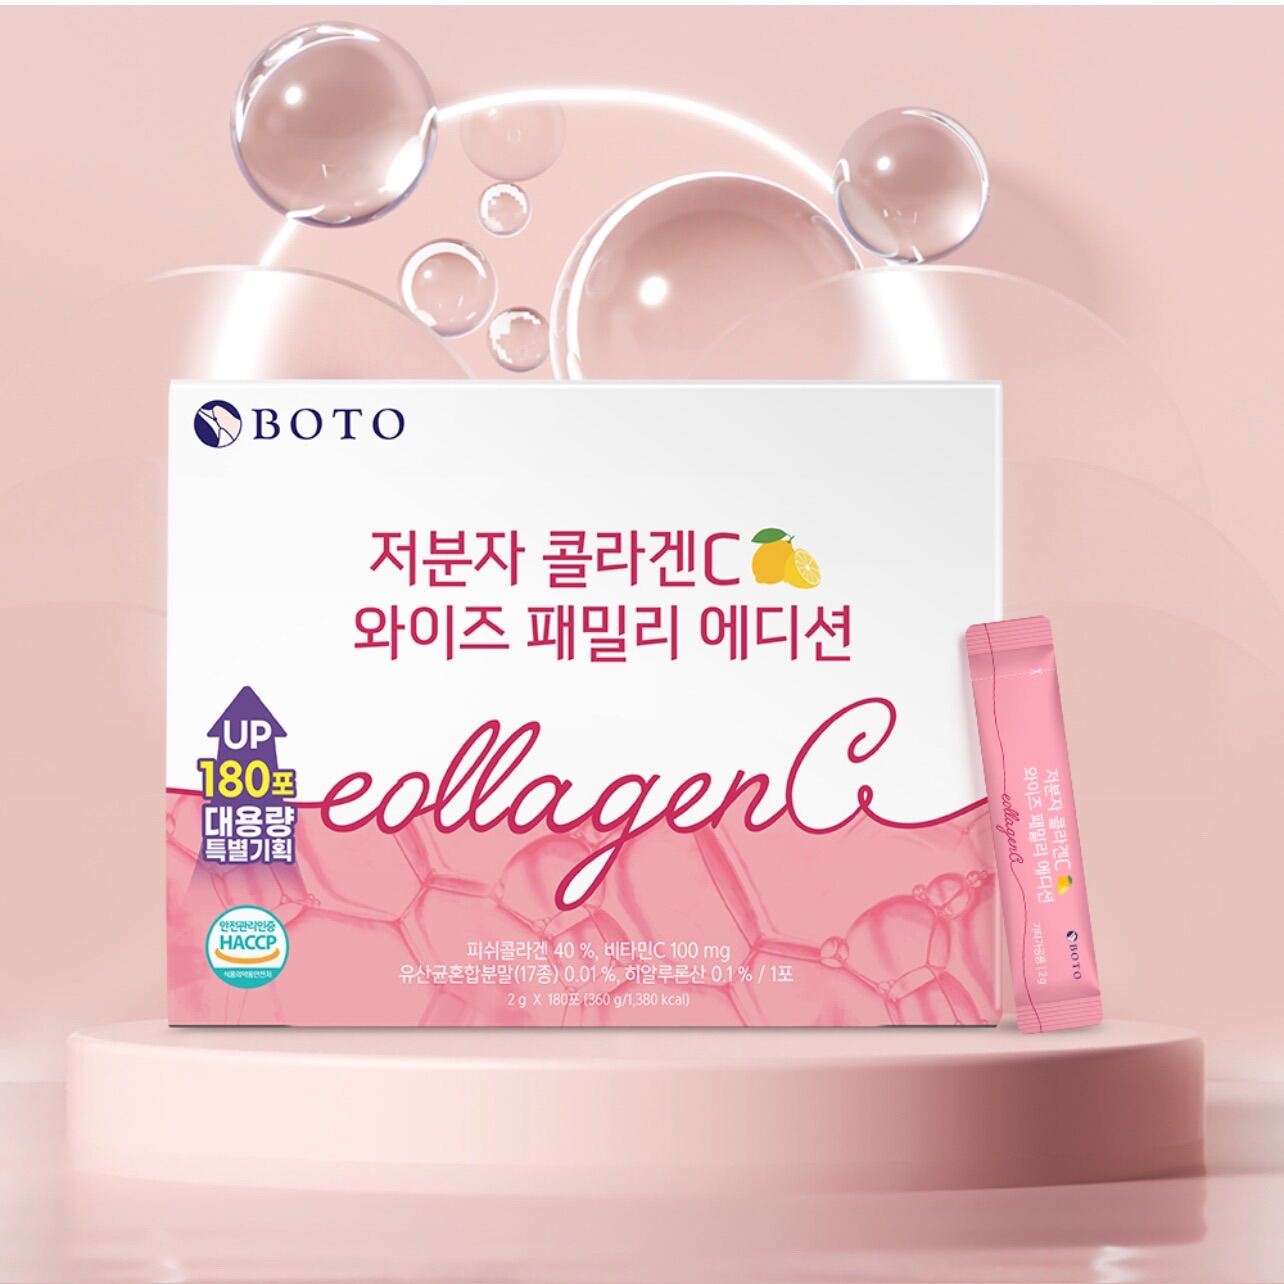 Bột uống collagen đẹp da hàn quốc boto collagen c hộp lớn 180 gói - ảnh sản phẩm 7